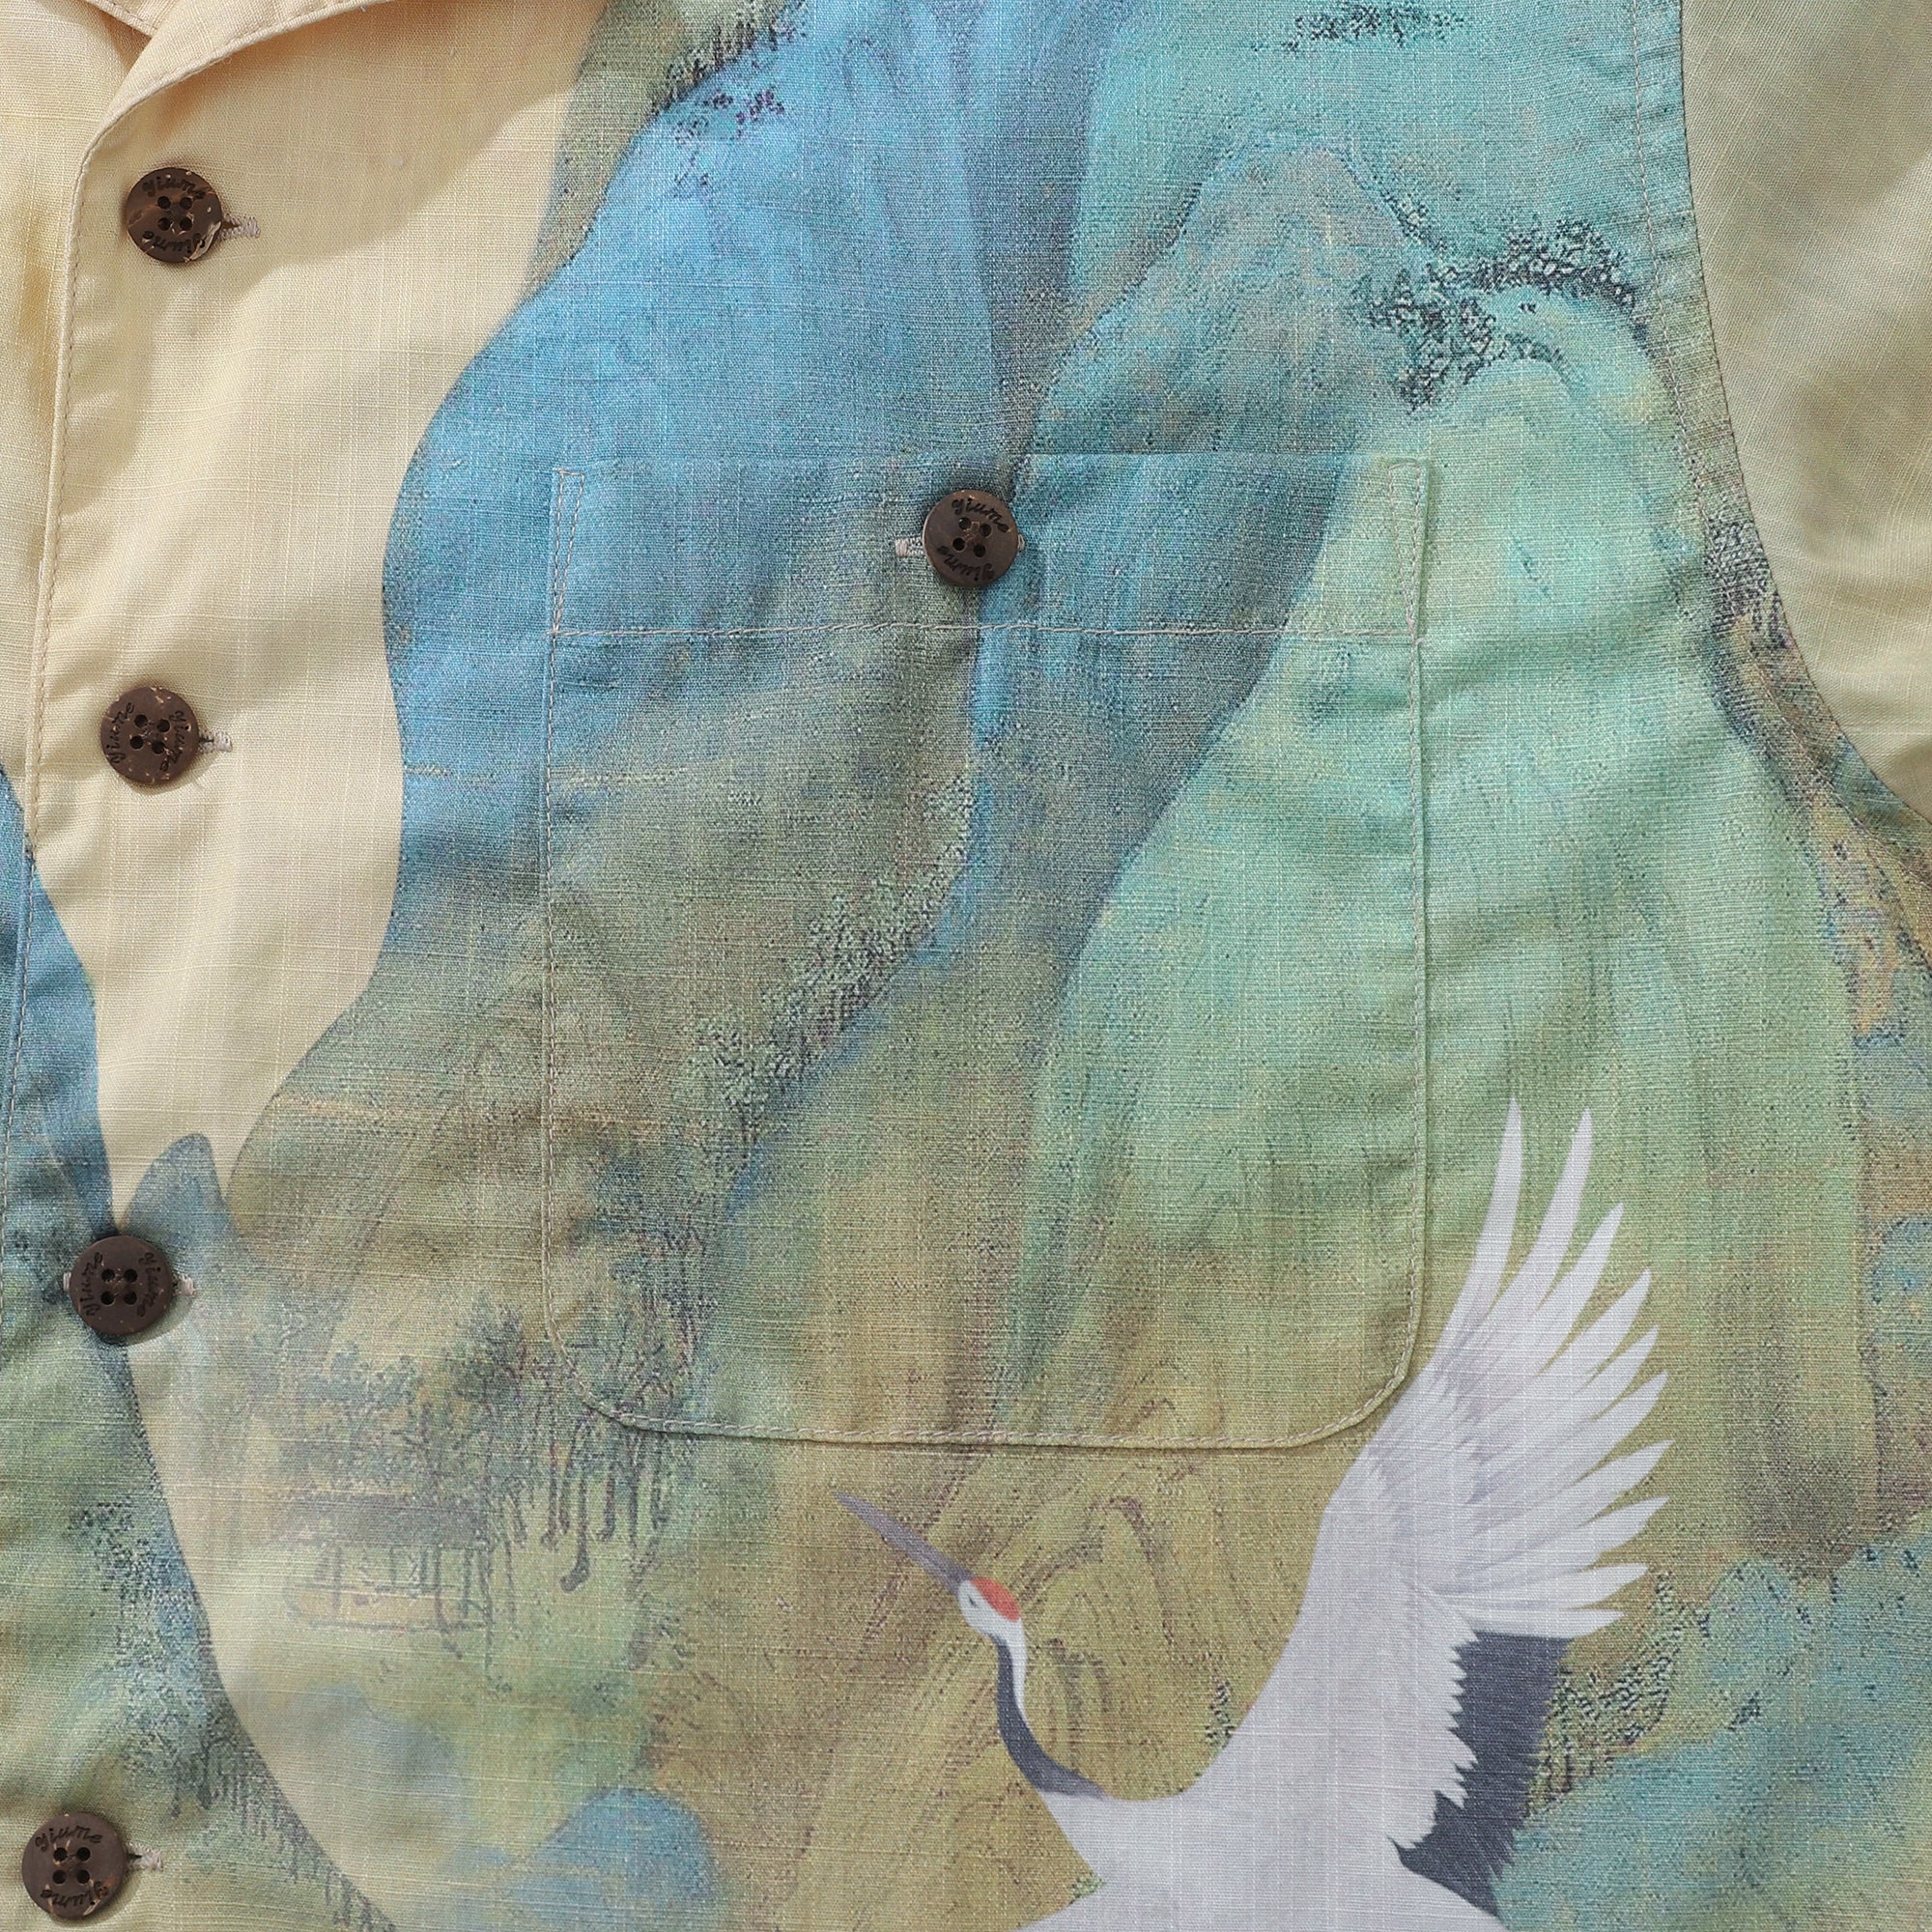 Camisa hawaiana vintage de los años 50 para hombre, camisa de campamento de manga corta con diseño de ríos y montañas Crane